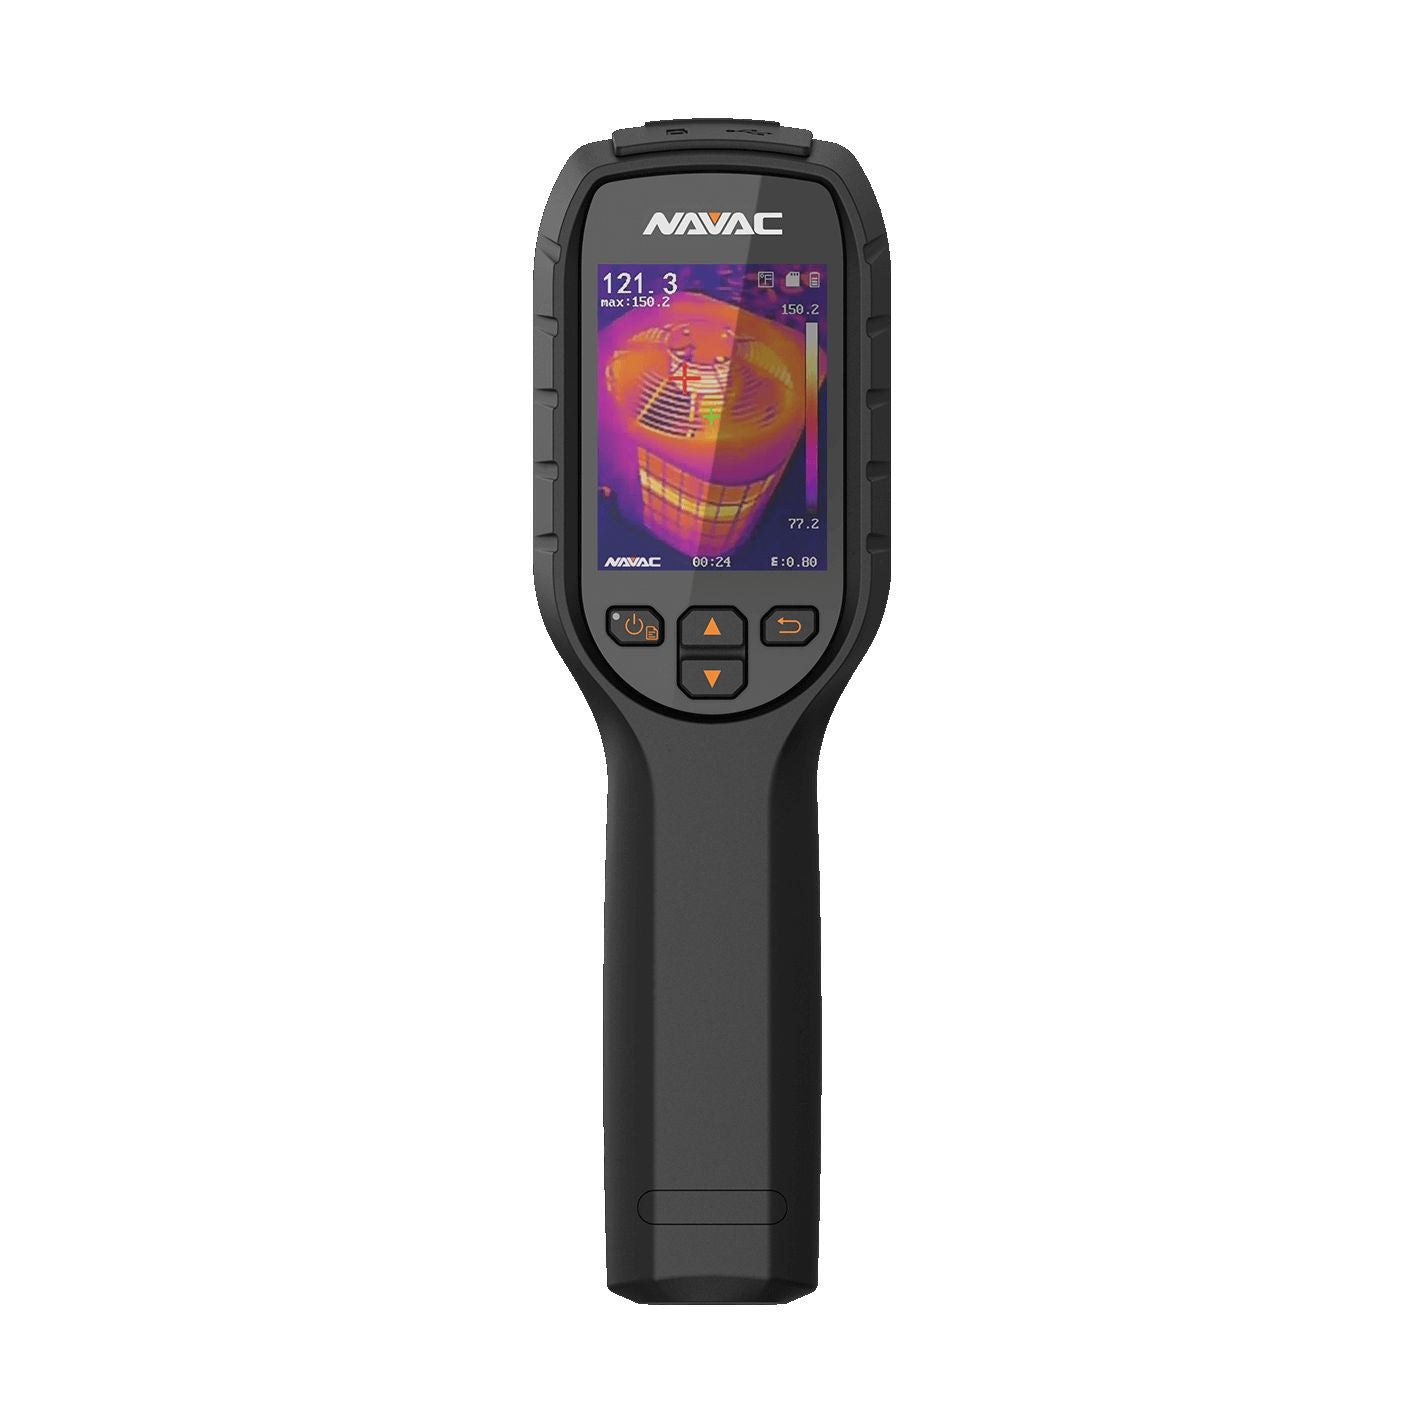 NMT1000 - Thermal Imaging Camera